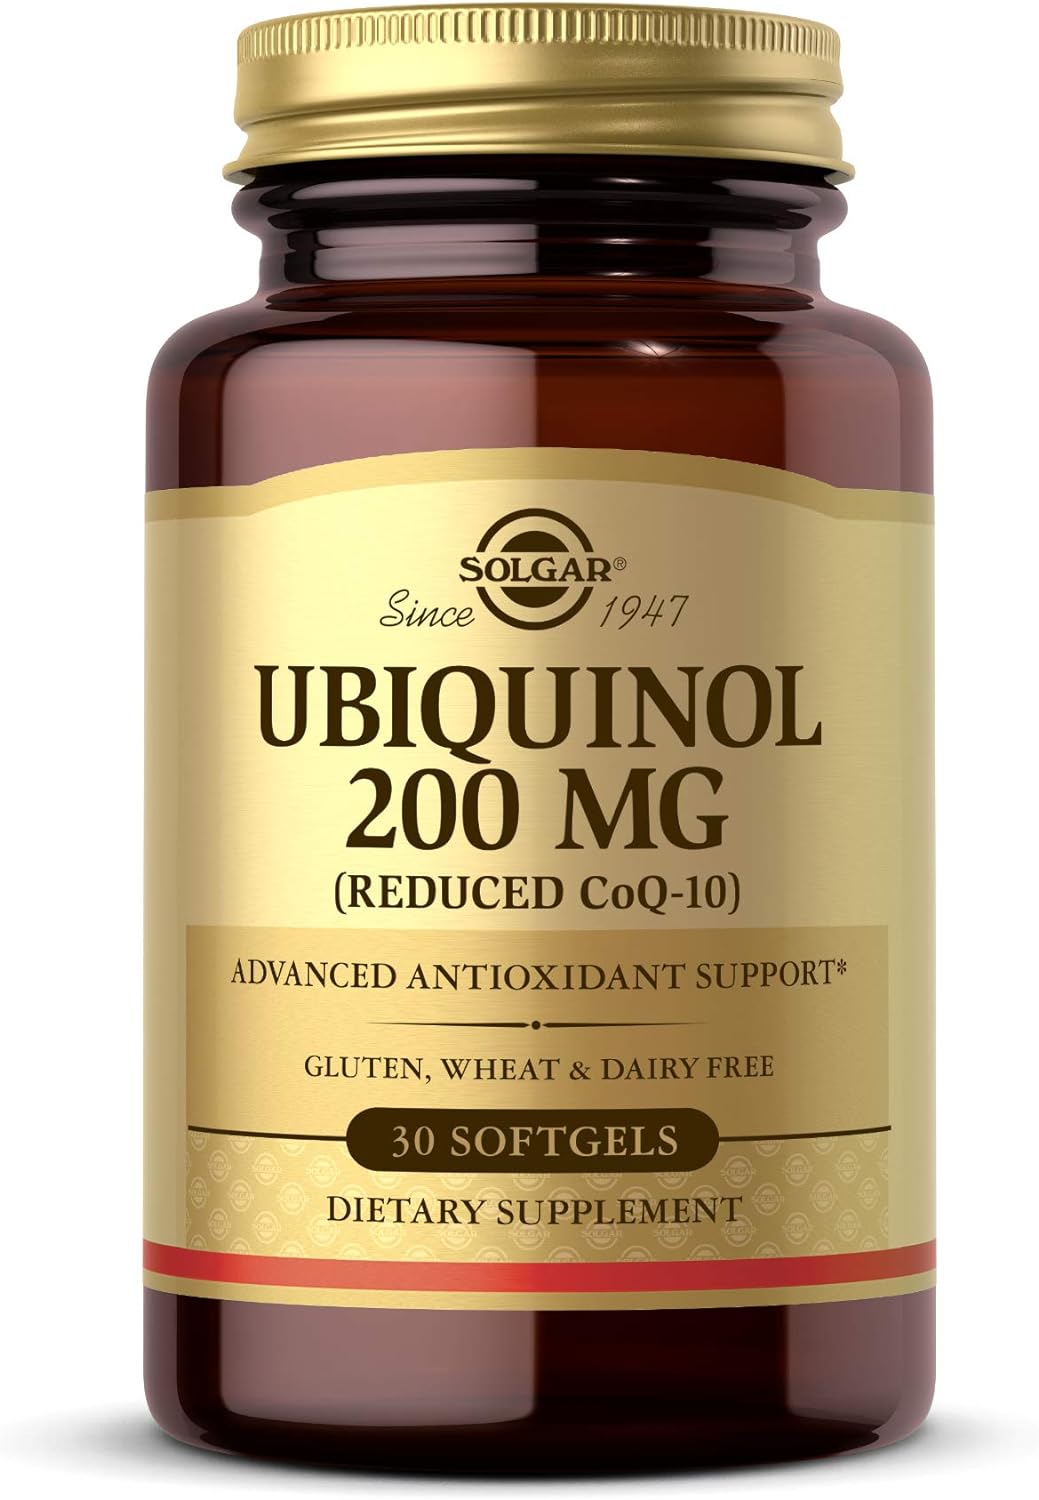 Solgar Ubiquinol 200 mg (Reduced CoQ-10), 30 Softgels - Promotes Heart